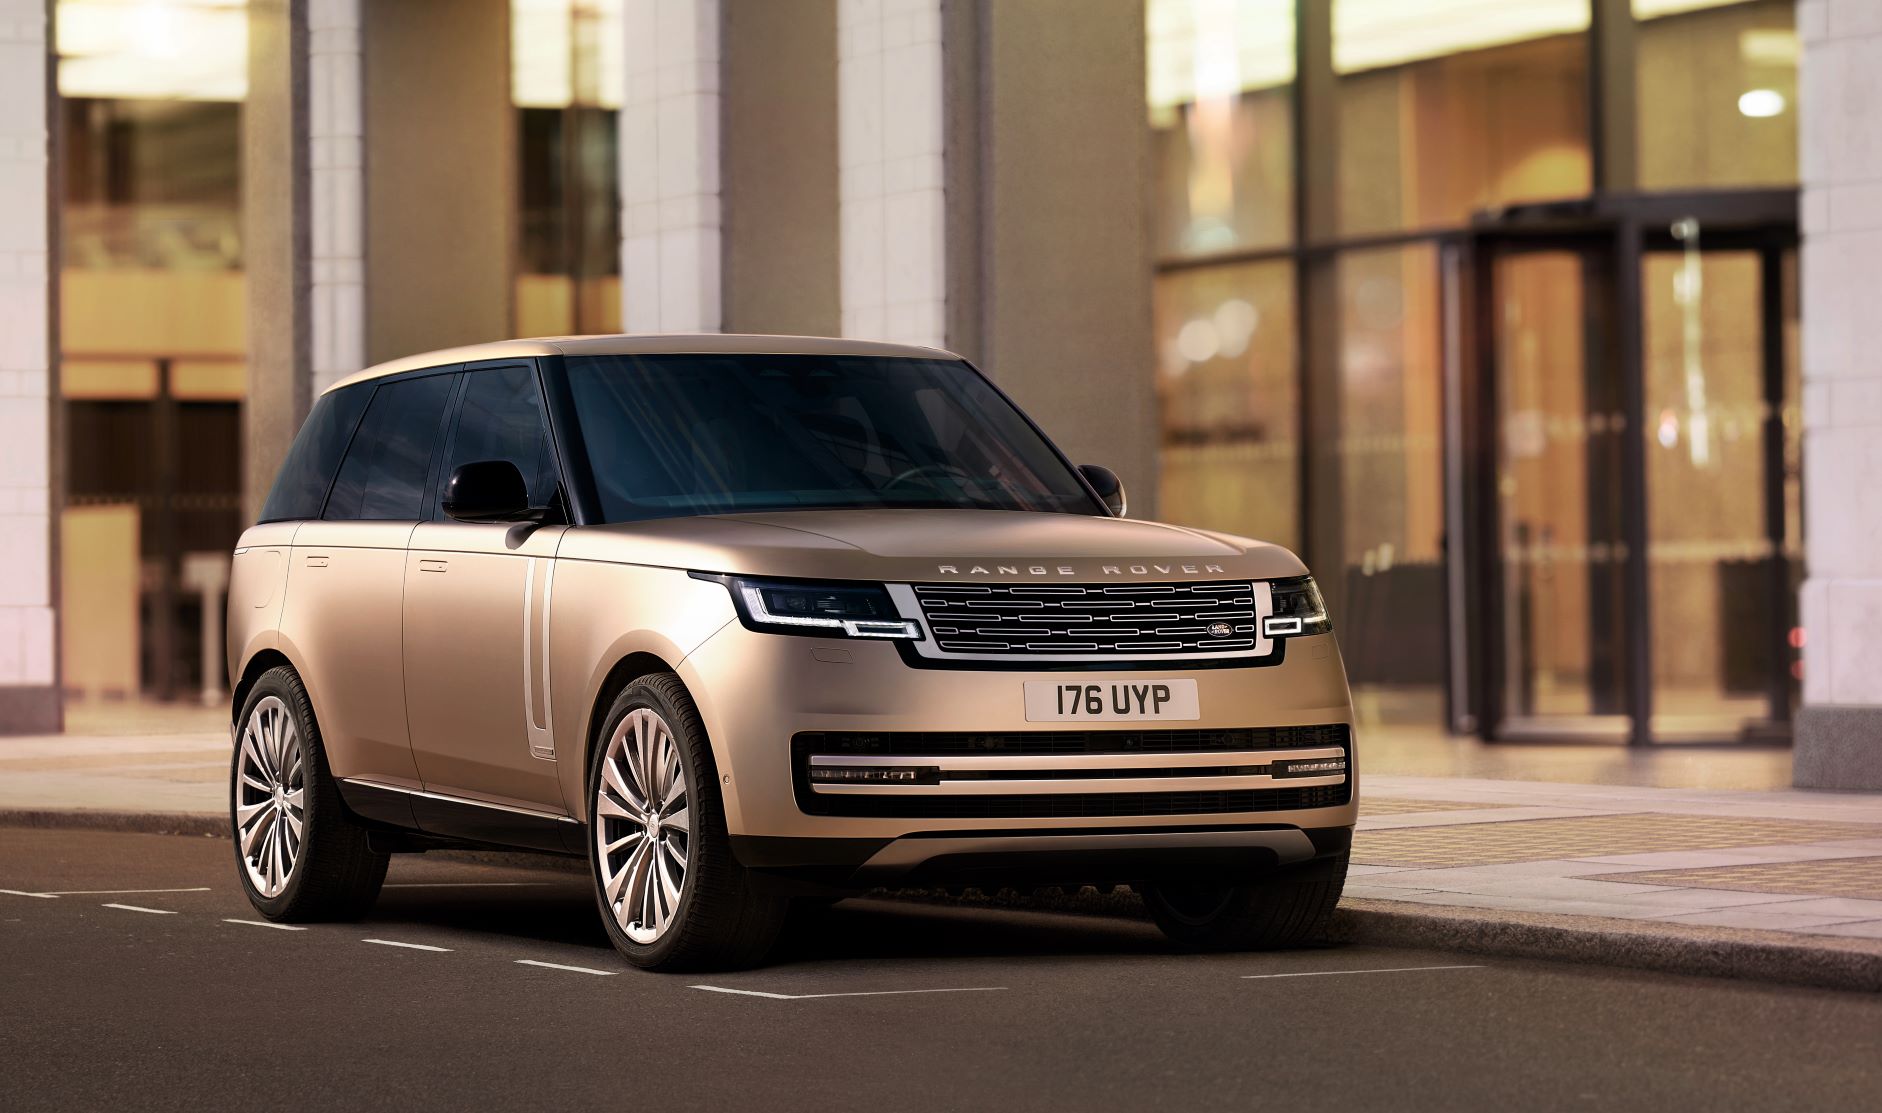 JLM Auto Luncurkan The New Range Rover, Tampil Lebih Modern nan Elegan